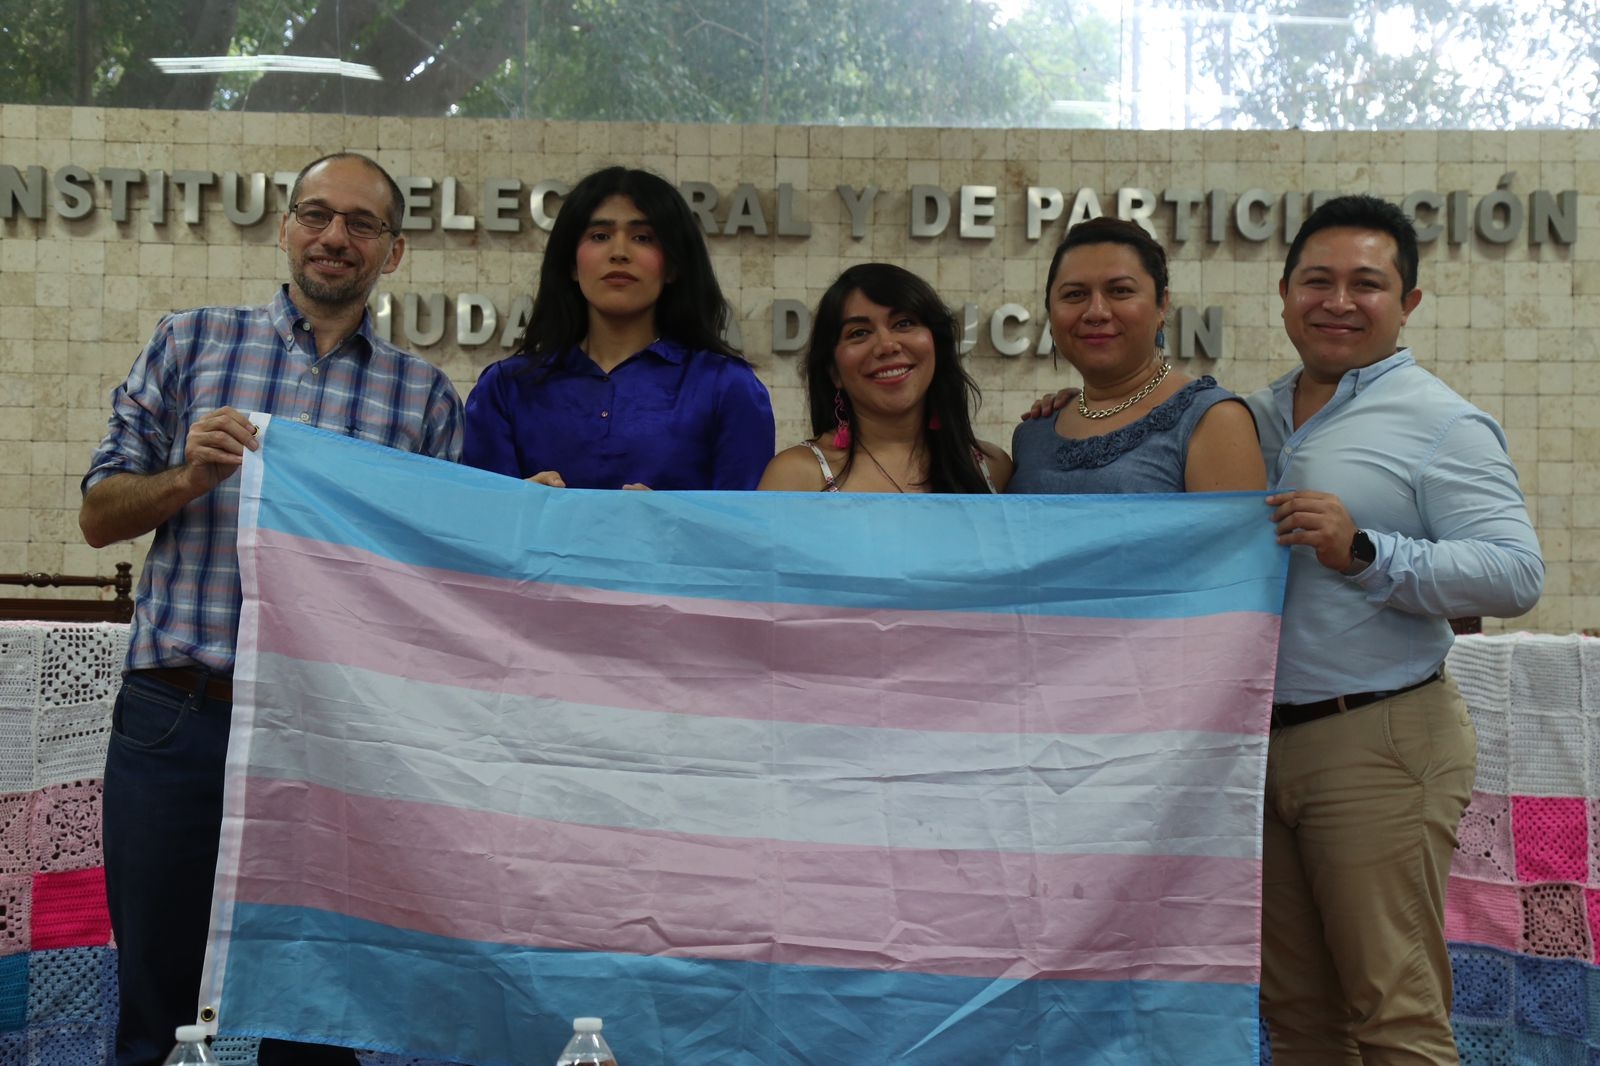 Personas trans de Yucatán piden tener el reconocimiento jurídico y de identidad, así como derechos a la salud y educación